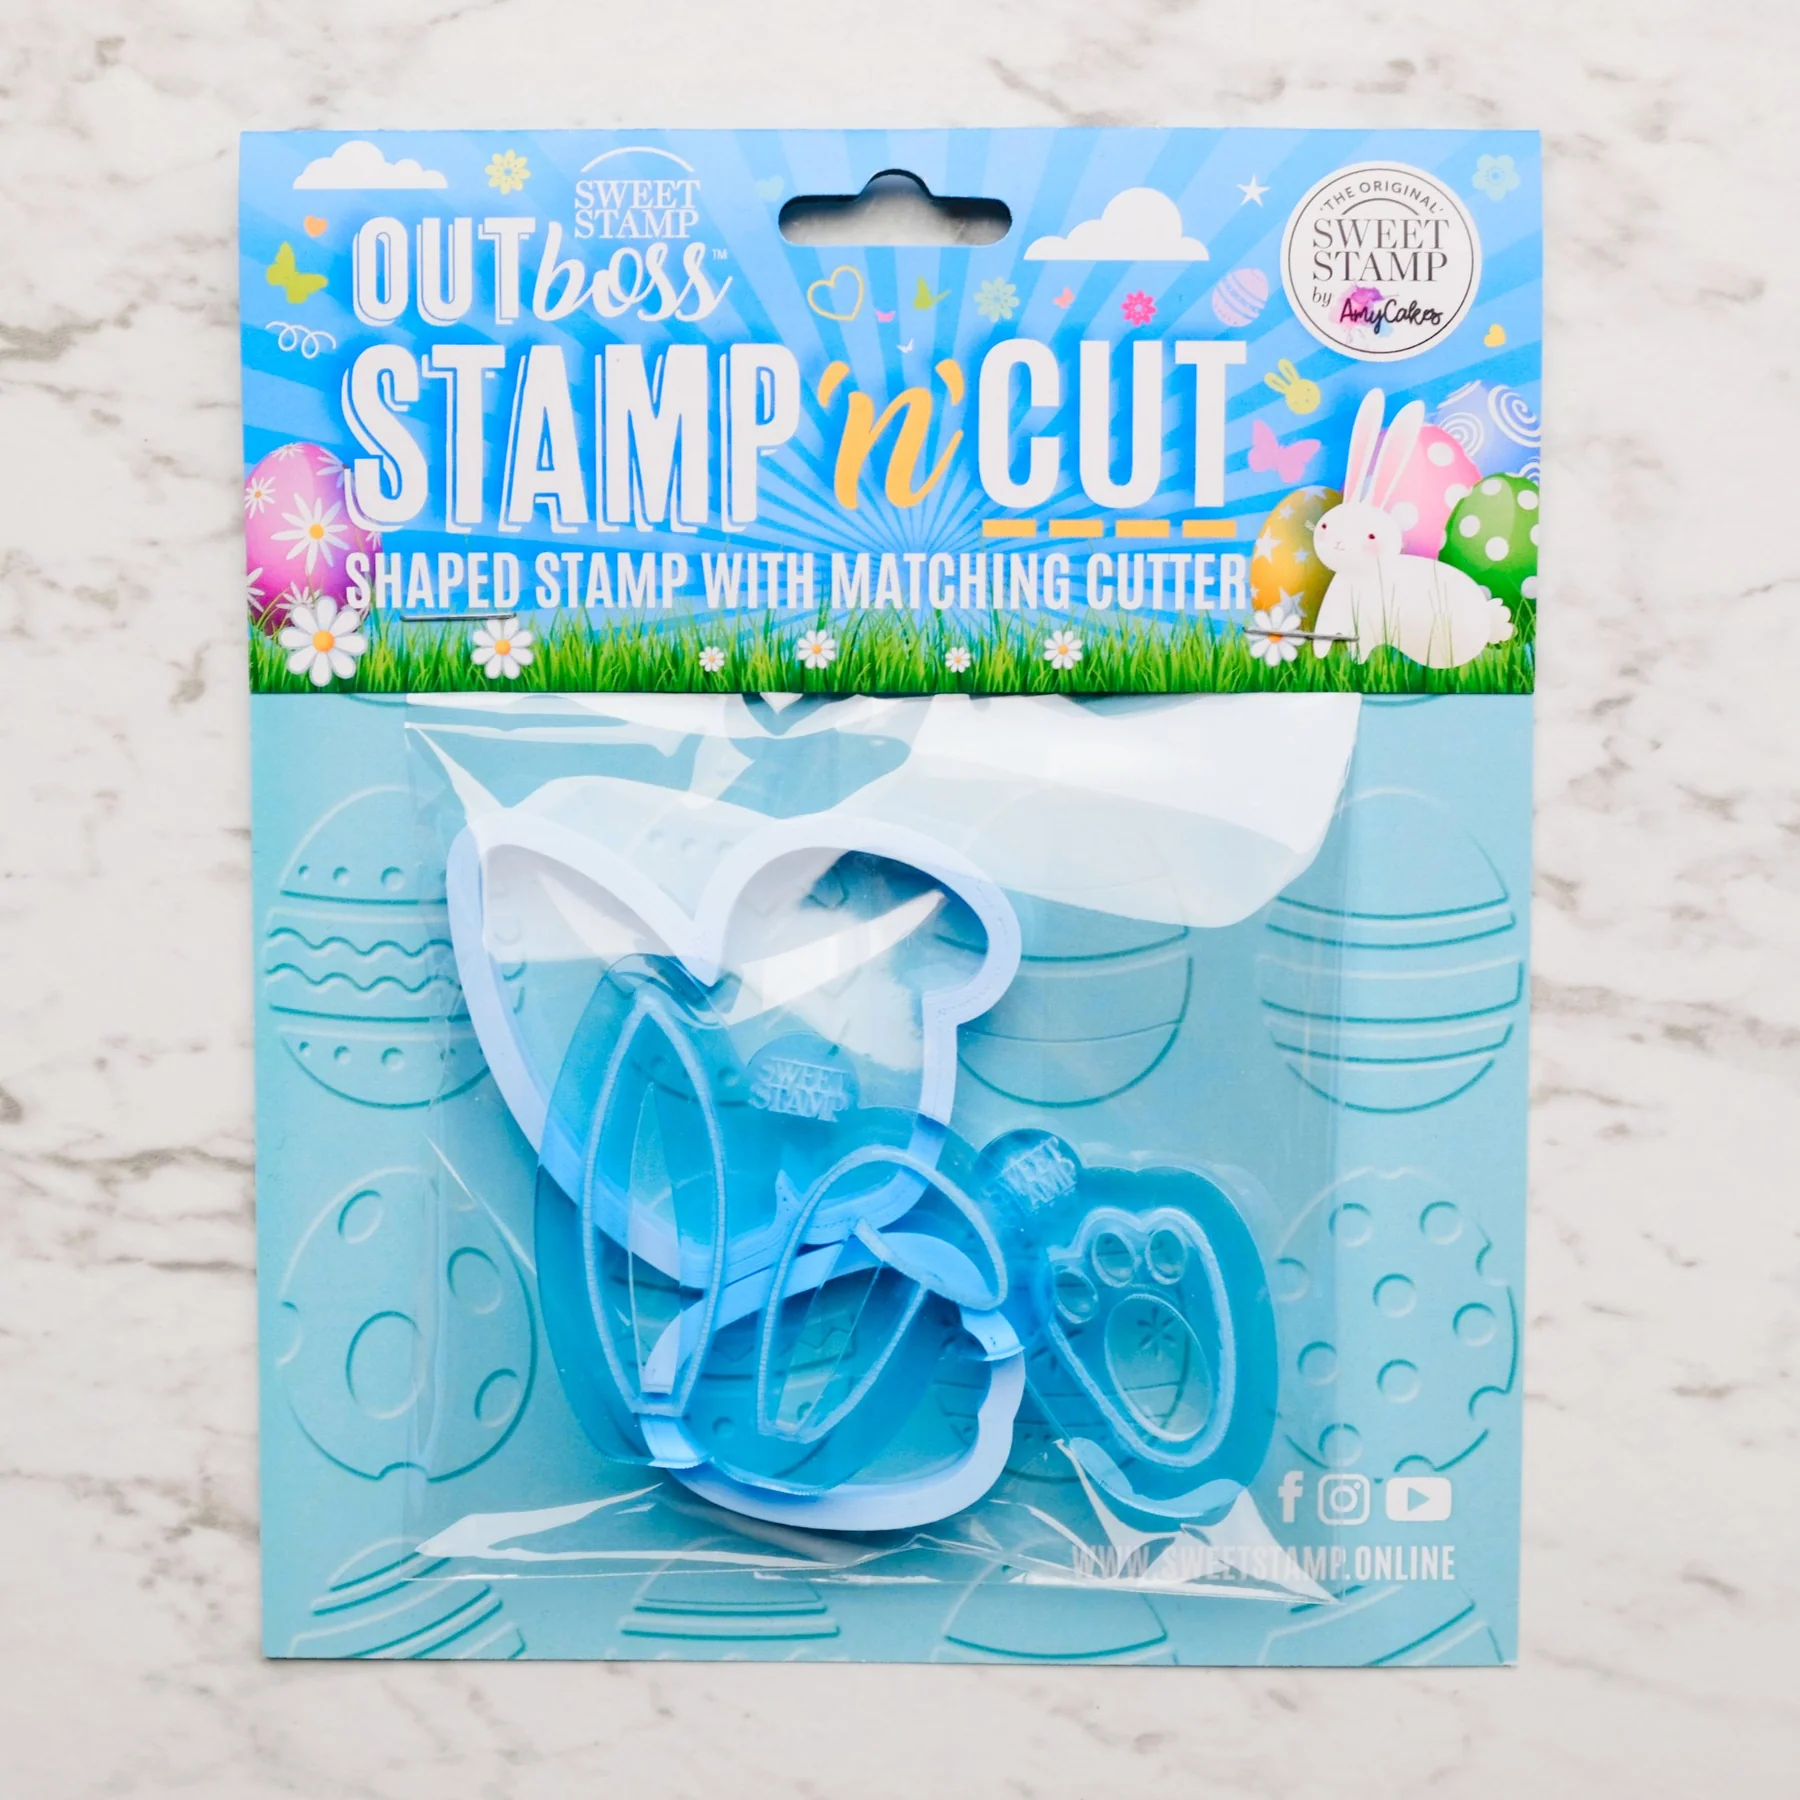 Bilde av Sweet Stamp Outboss - Stamp N Cut -kanin Cupcakes-